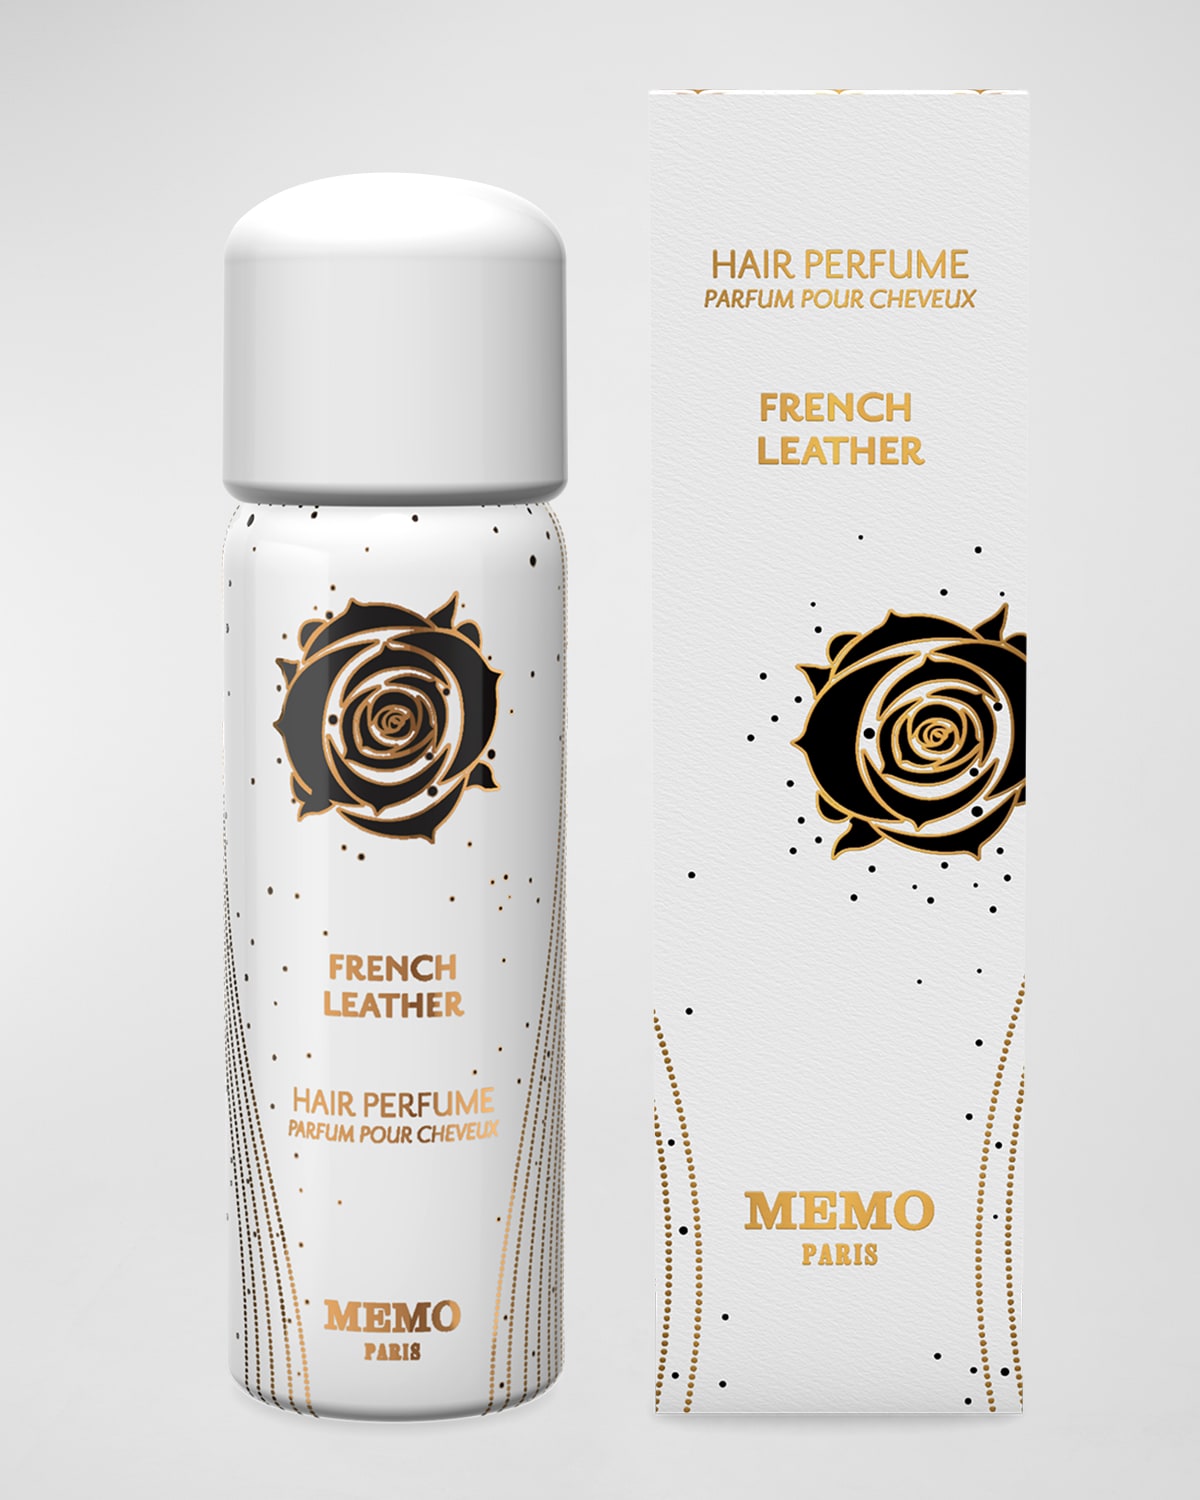 Memo Paris Hair Perfume French Leather, 2.7 oz./ 80 mL